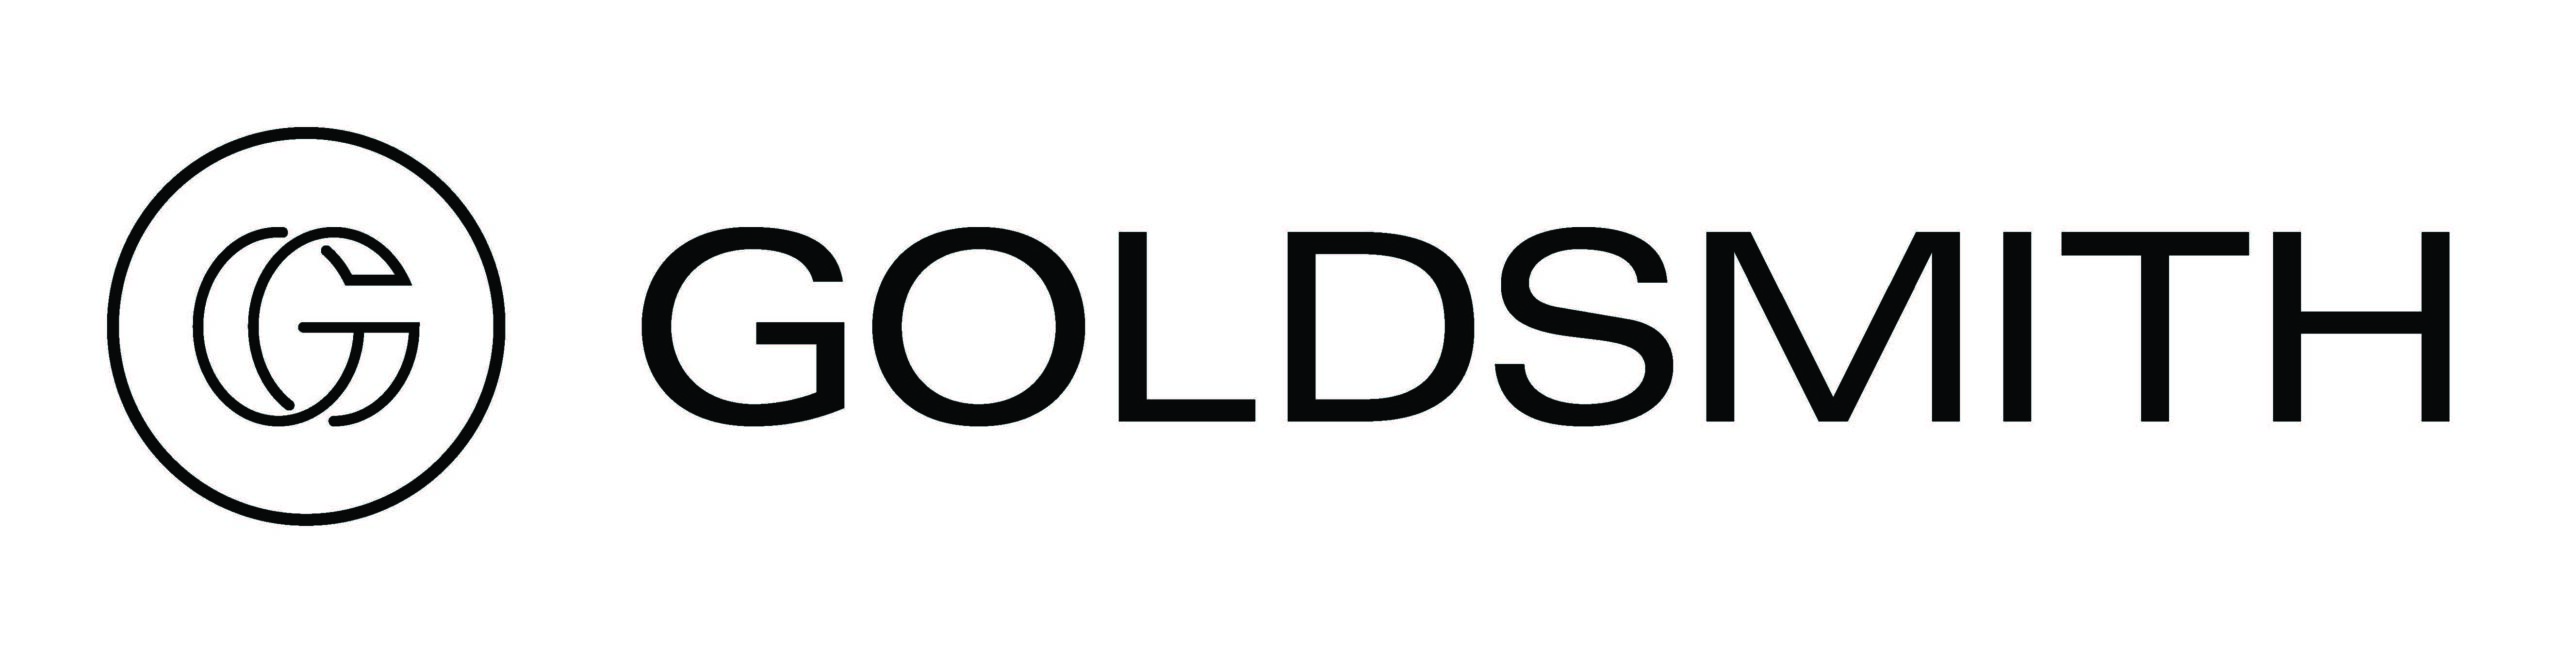 goldsmith logo